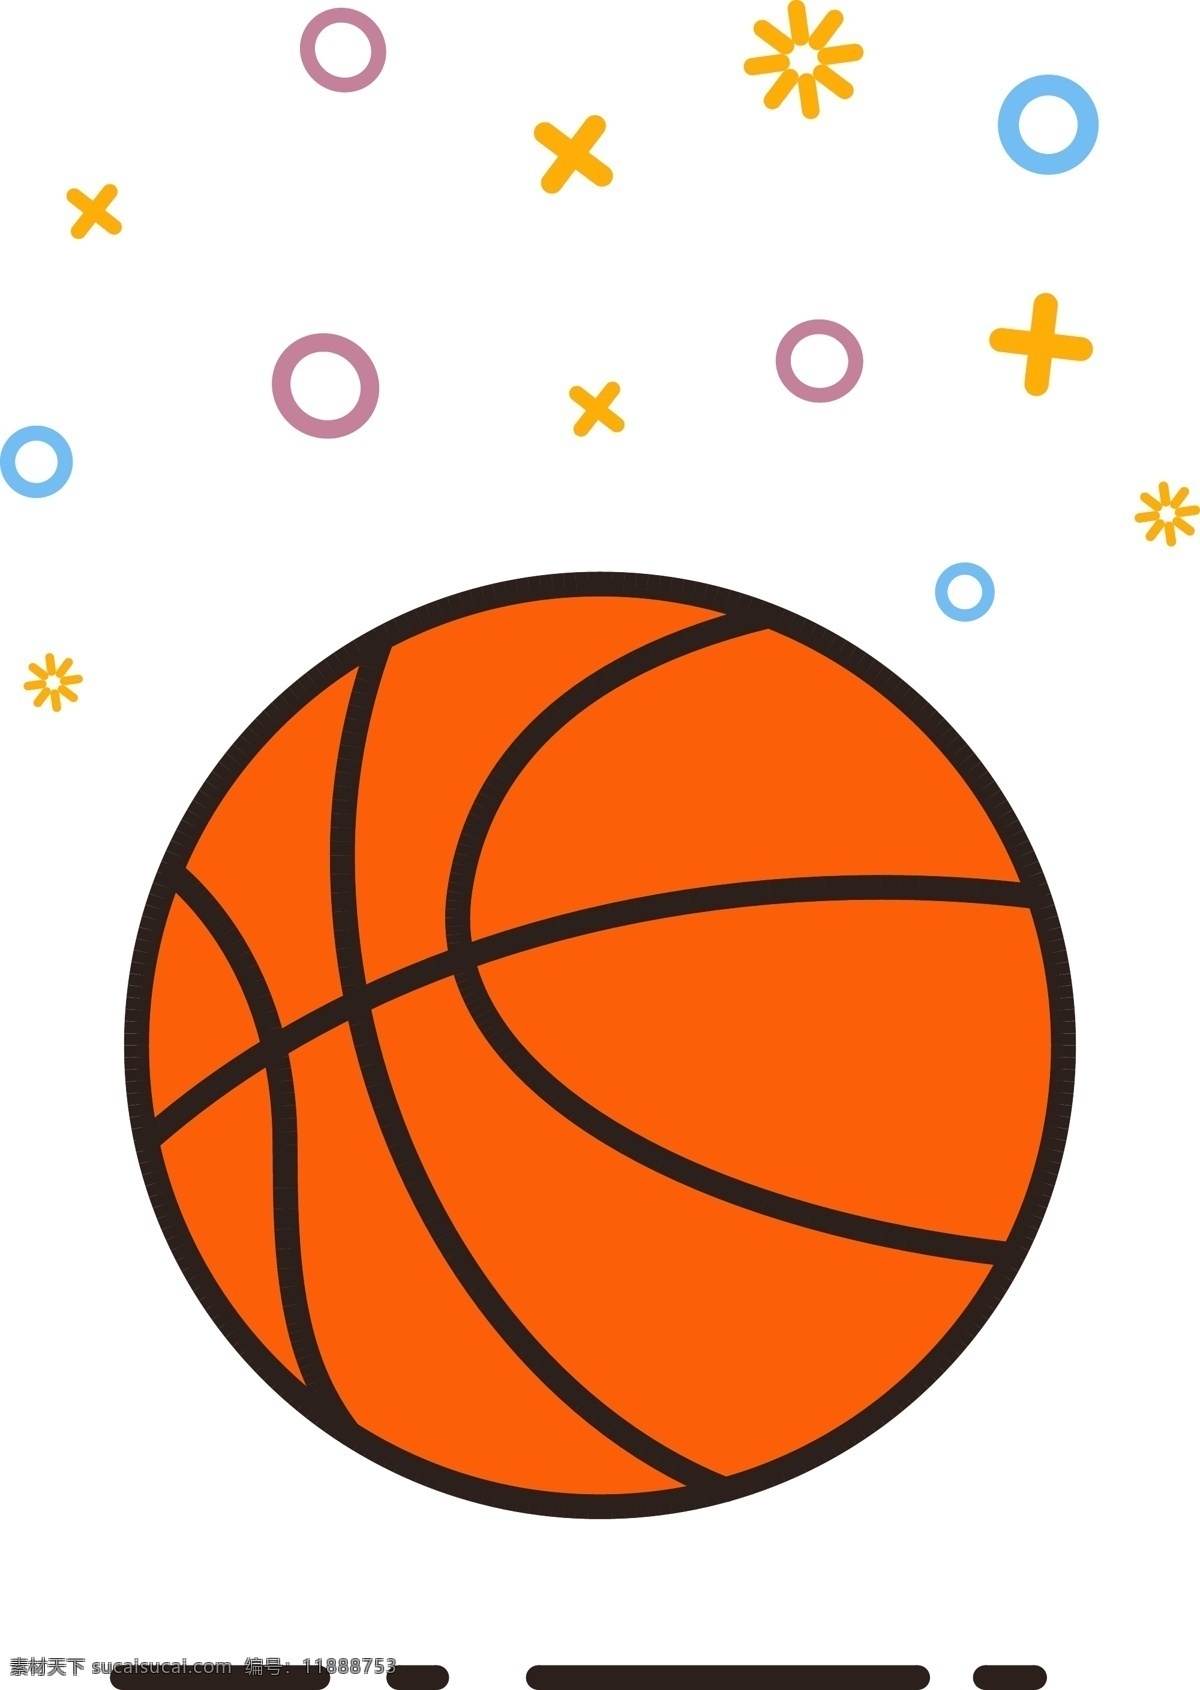 mbe 图标 卡通 篮球 橙色 手绘 矢量 商用 卡通可爱篮球 矢量篮球元素 儿童篮球 体育用品 手绘篮球素材